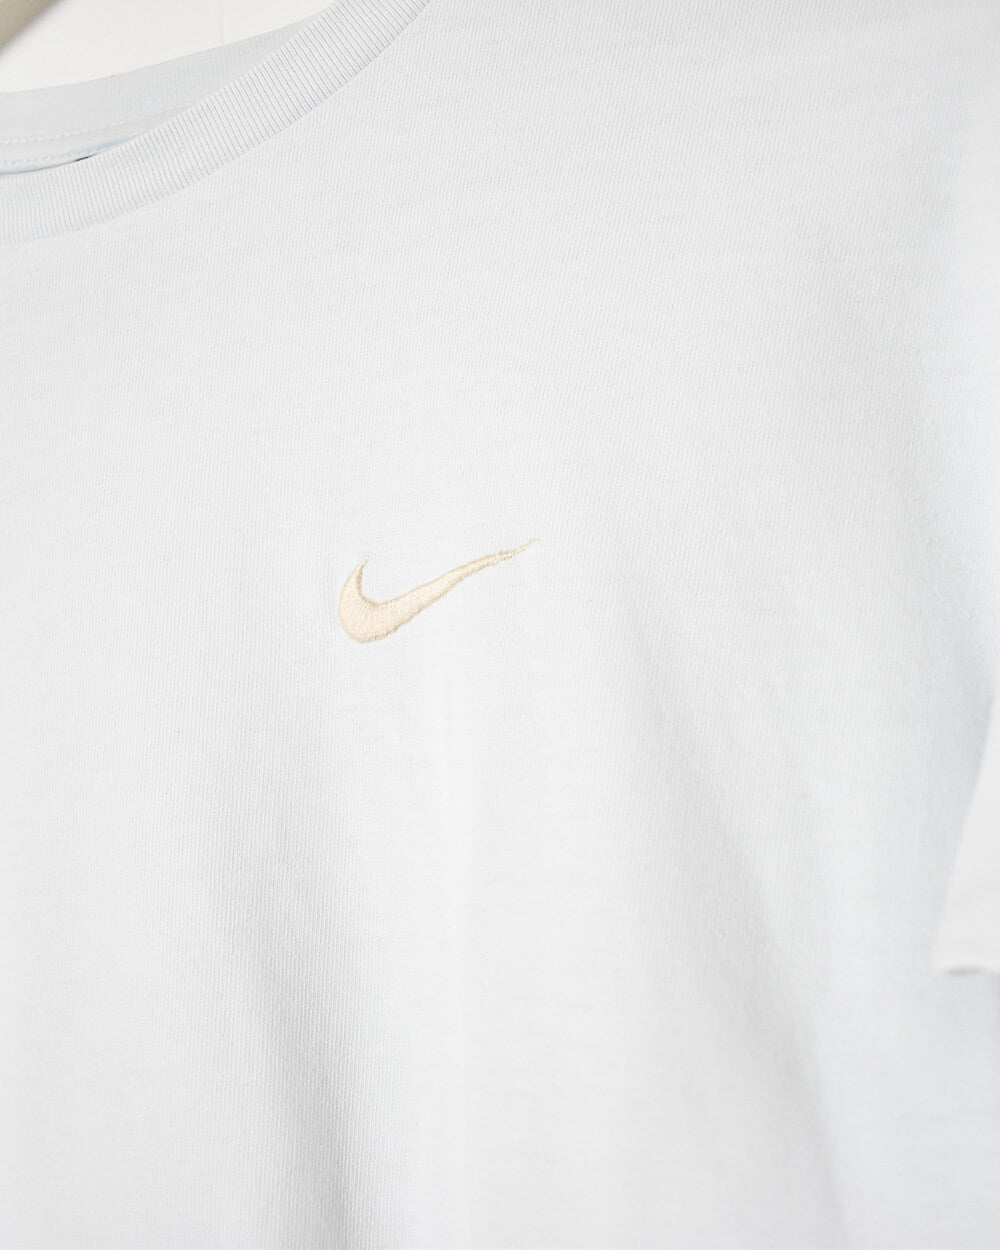 Baby Nike Women's T-Shirt - Small